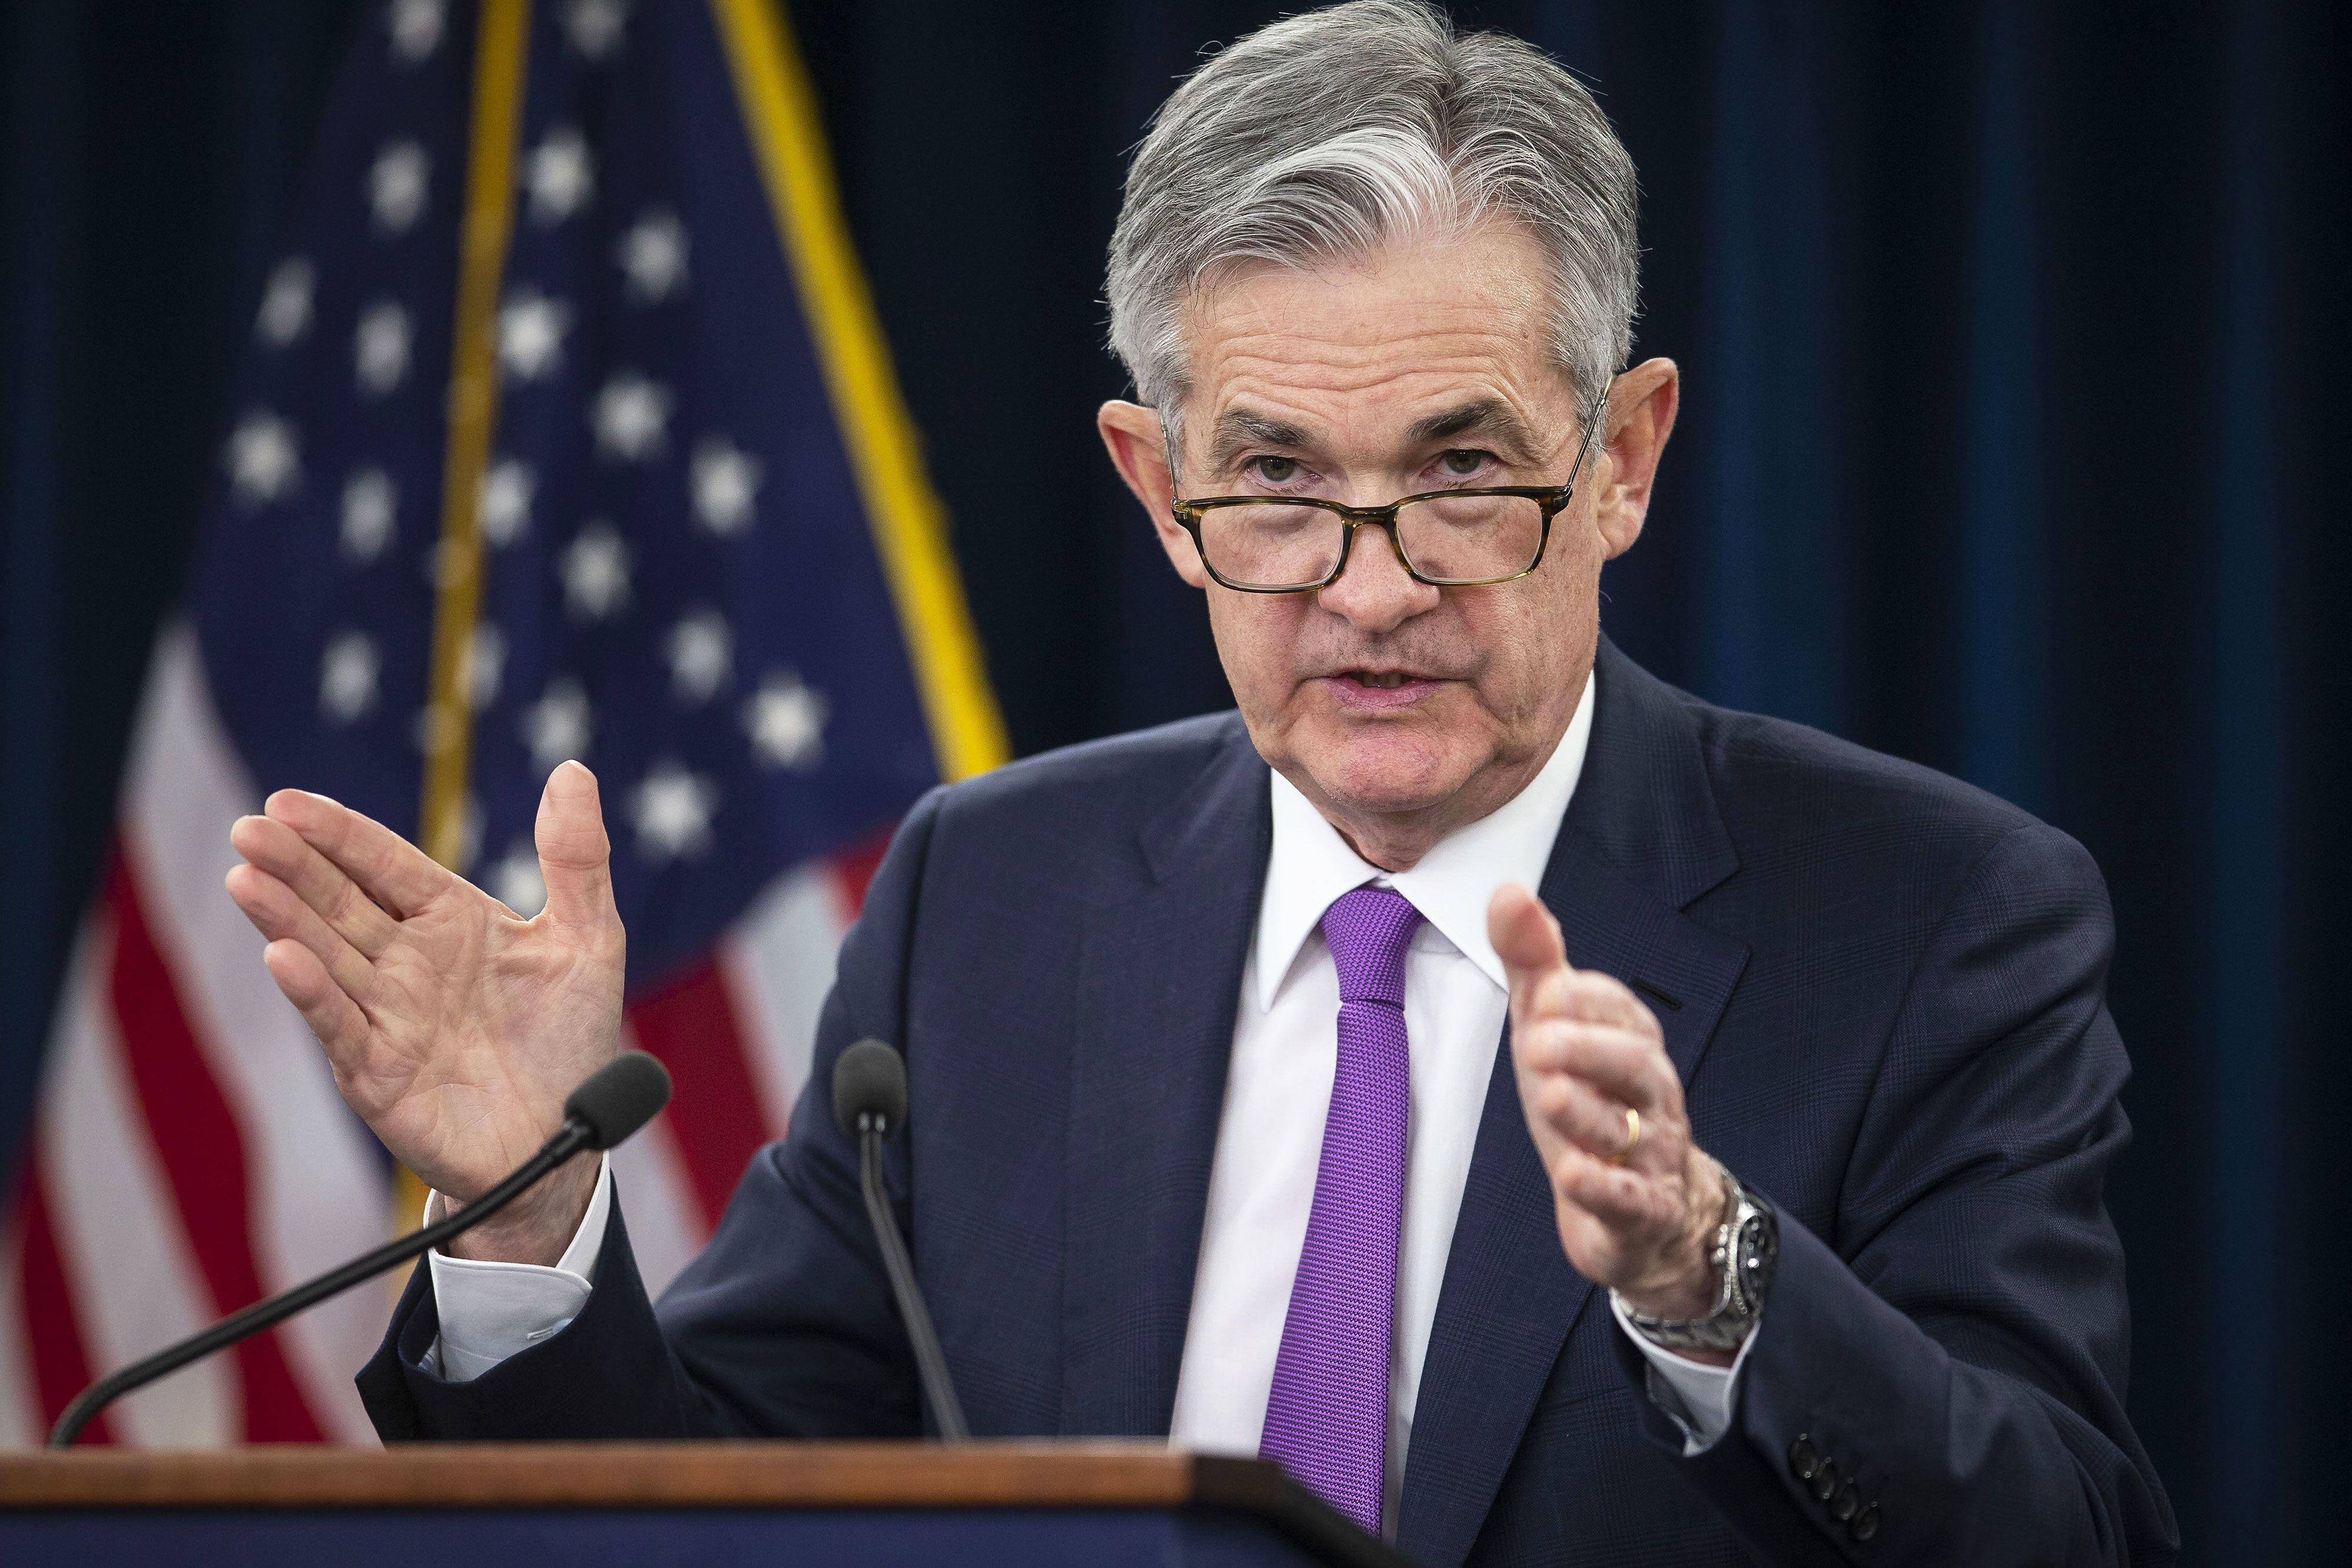 Biên bản cuộc họp của Fed cho thấy tâm lý “bearish”, nhưng không nhất thiết là tiêu cực đối với USD